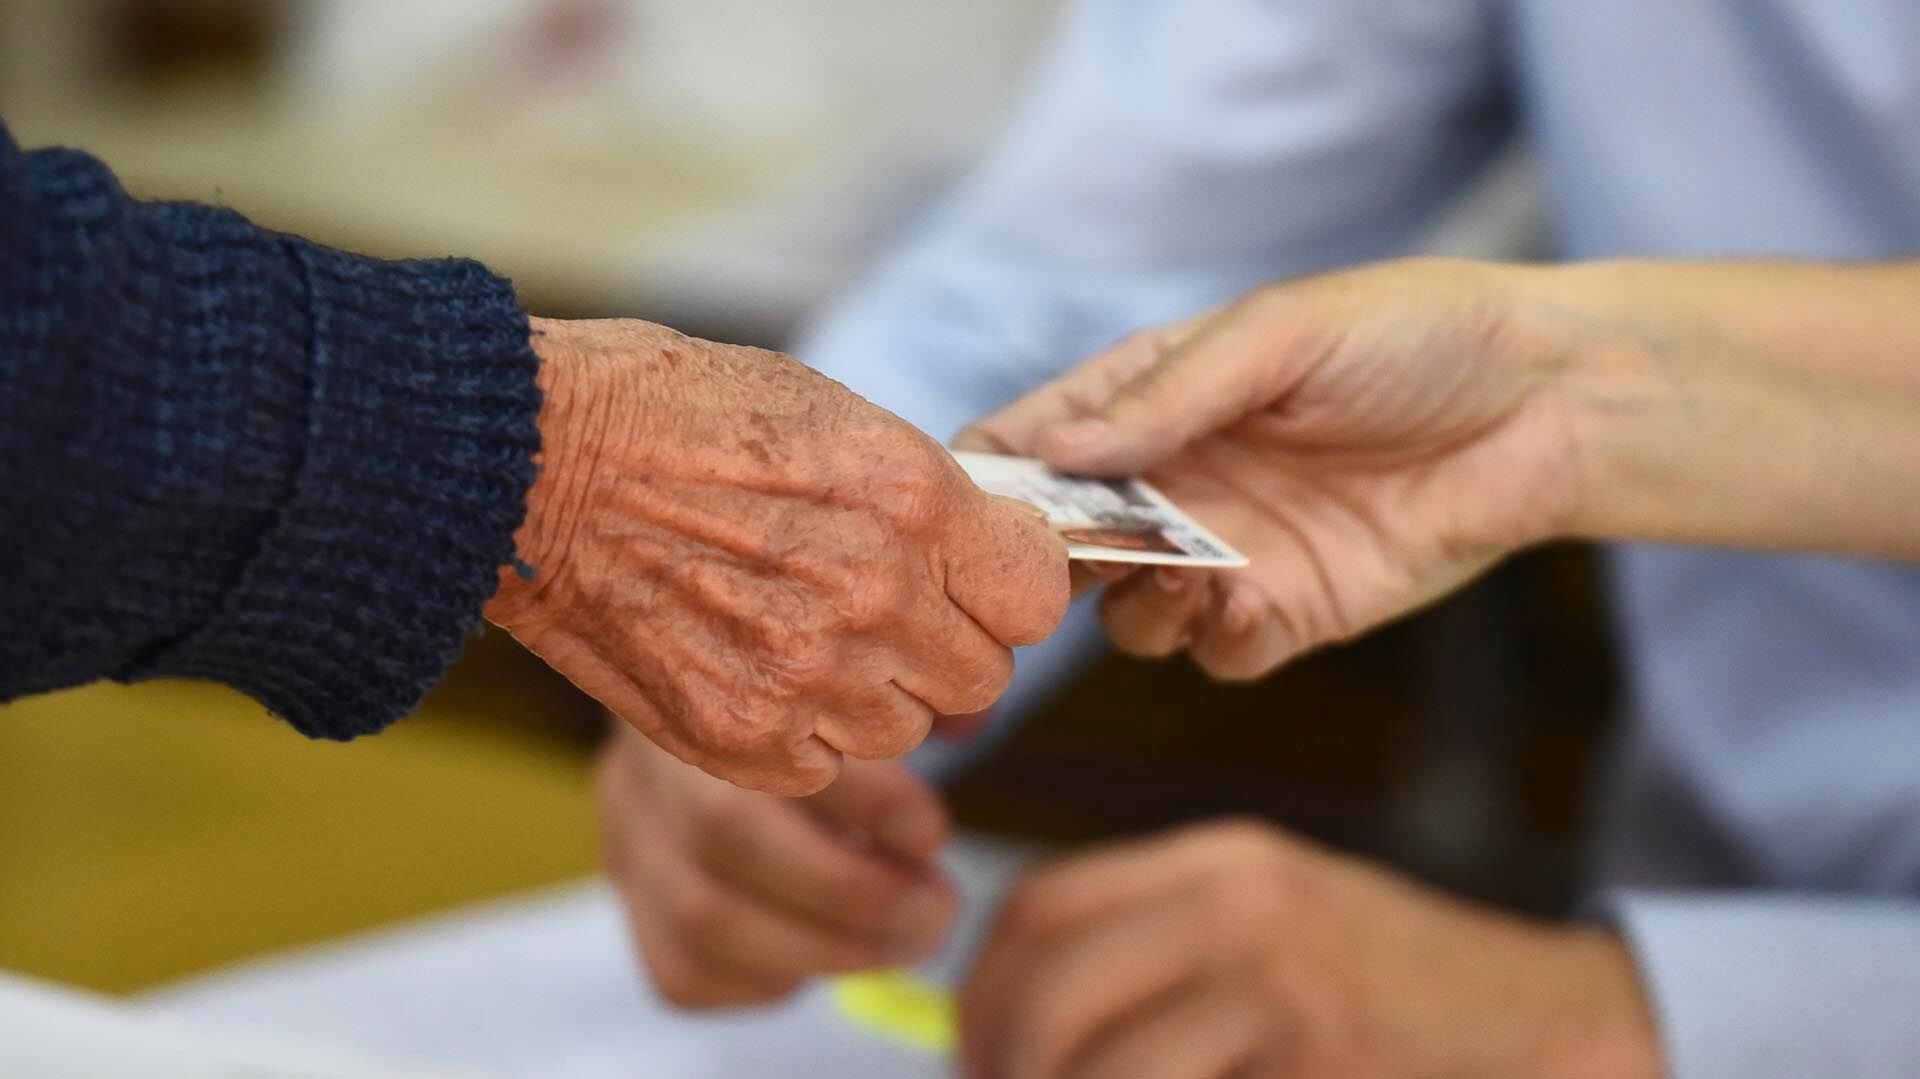 Para poder emitir el voto en las elecciones del 22 de octubre, es necesario figurar en el padrón electoral y presentar un documento cívico habilitado para votar (Getty)